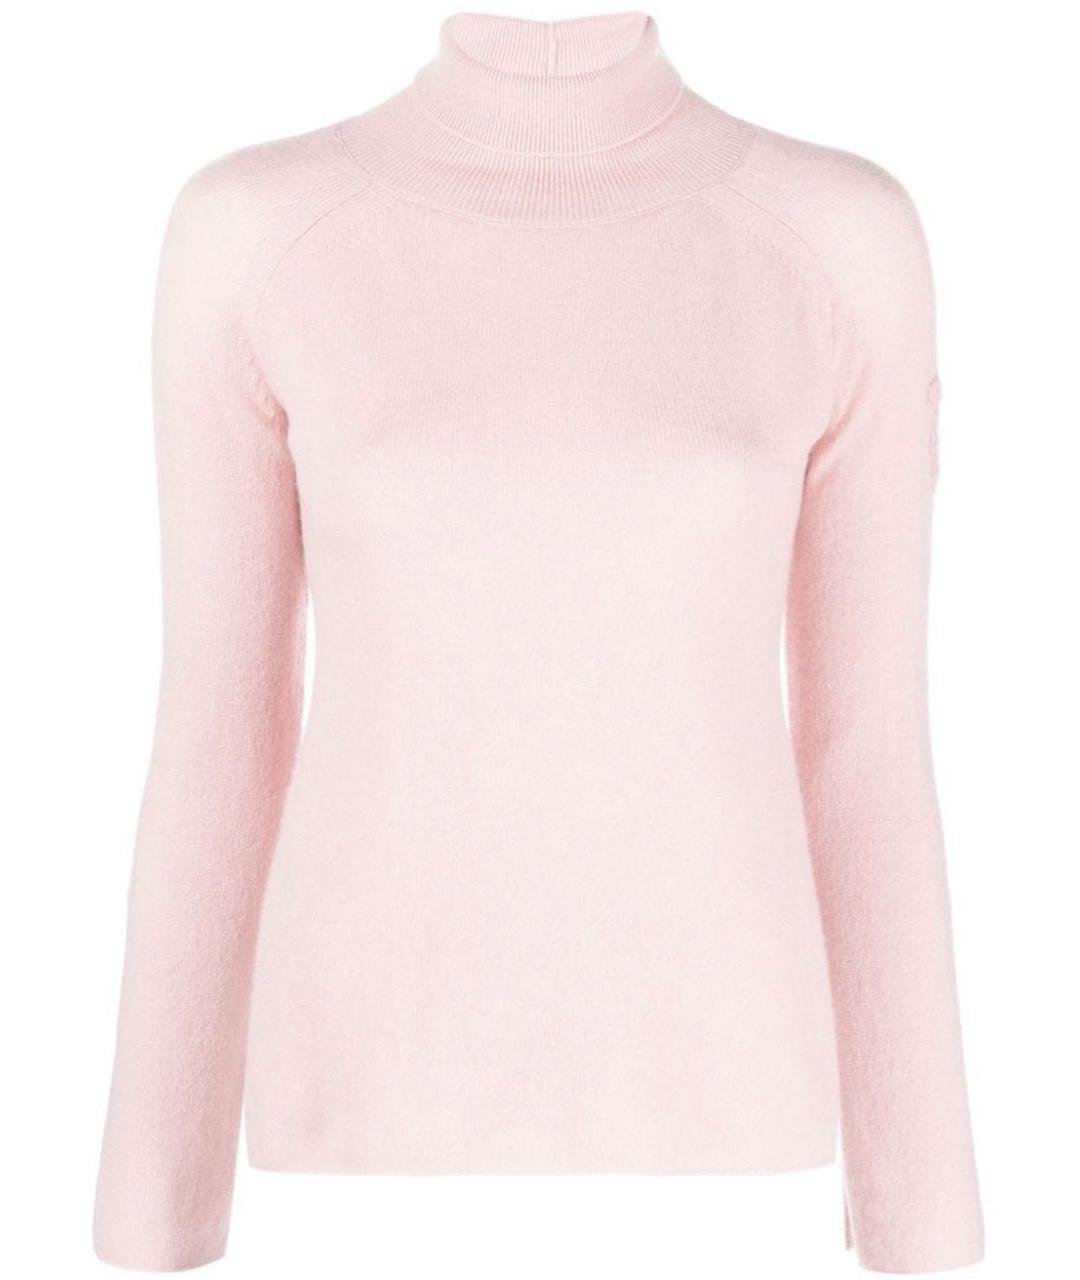 ERMANNO SCERVINO Розовый кашемировый джемпер / свитер, фото 1